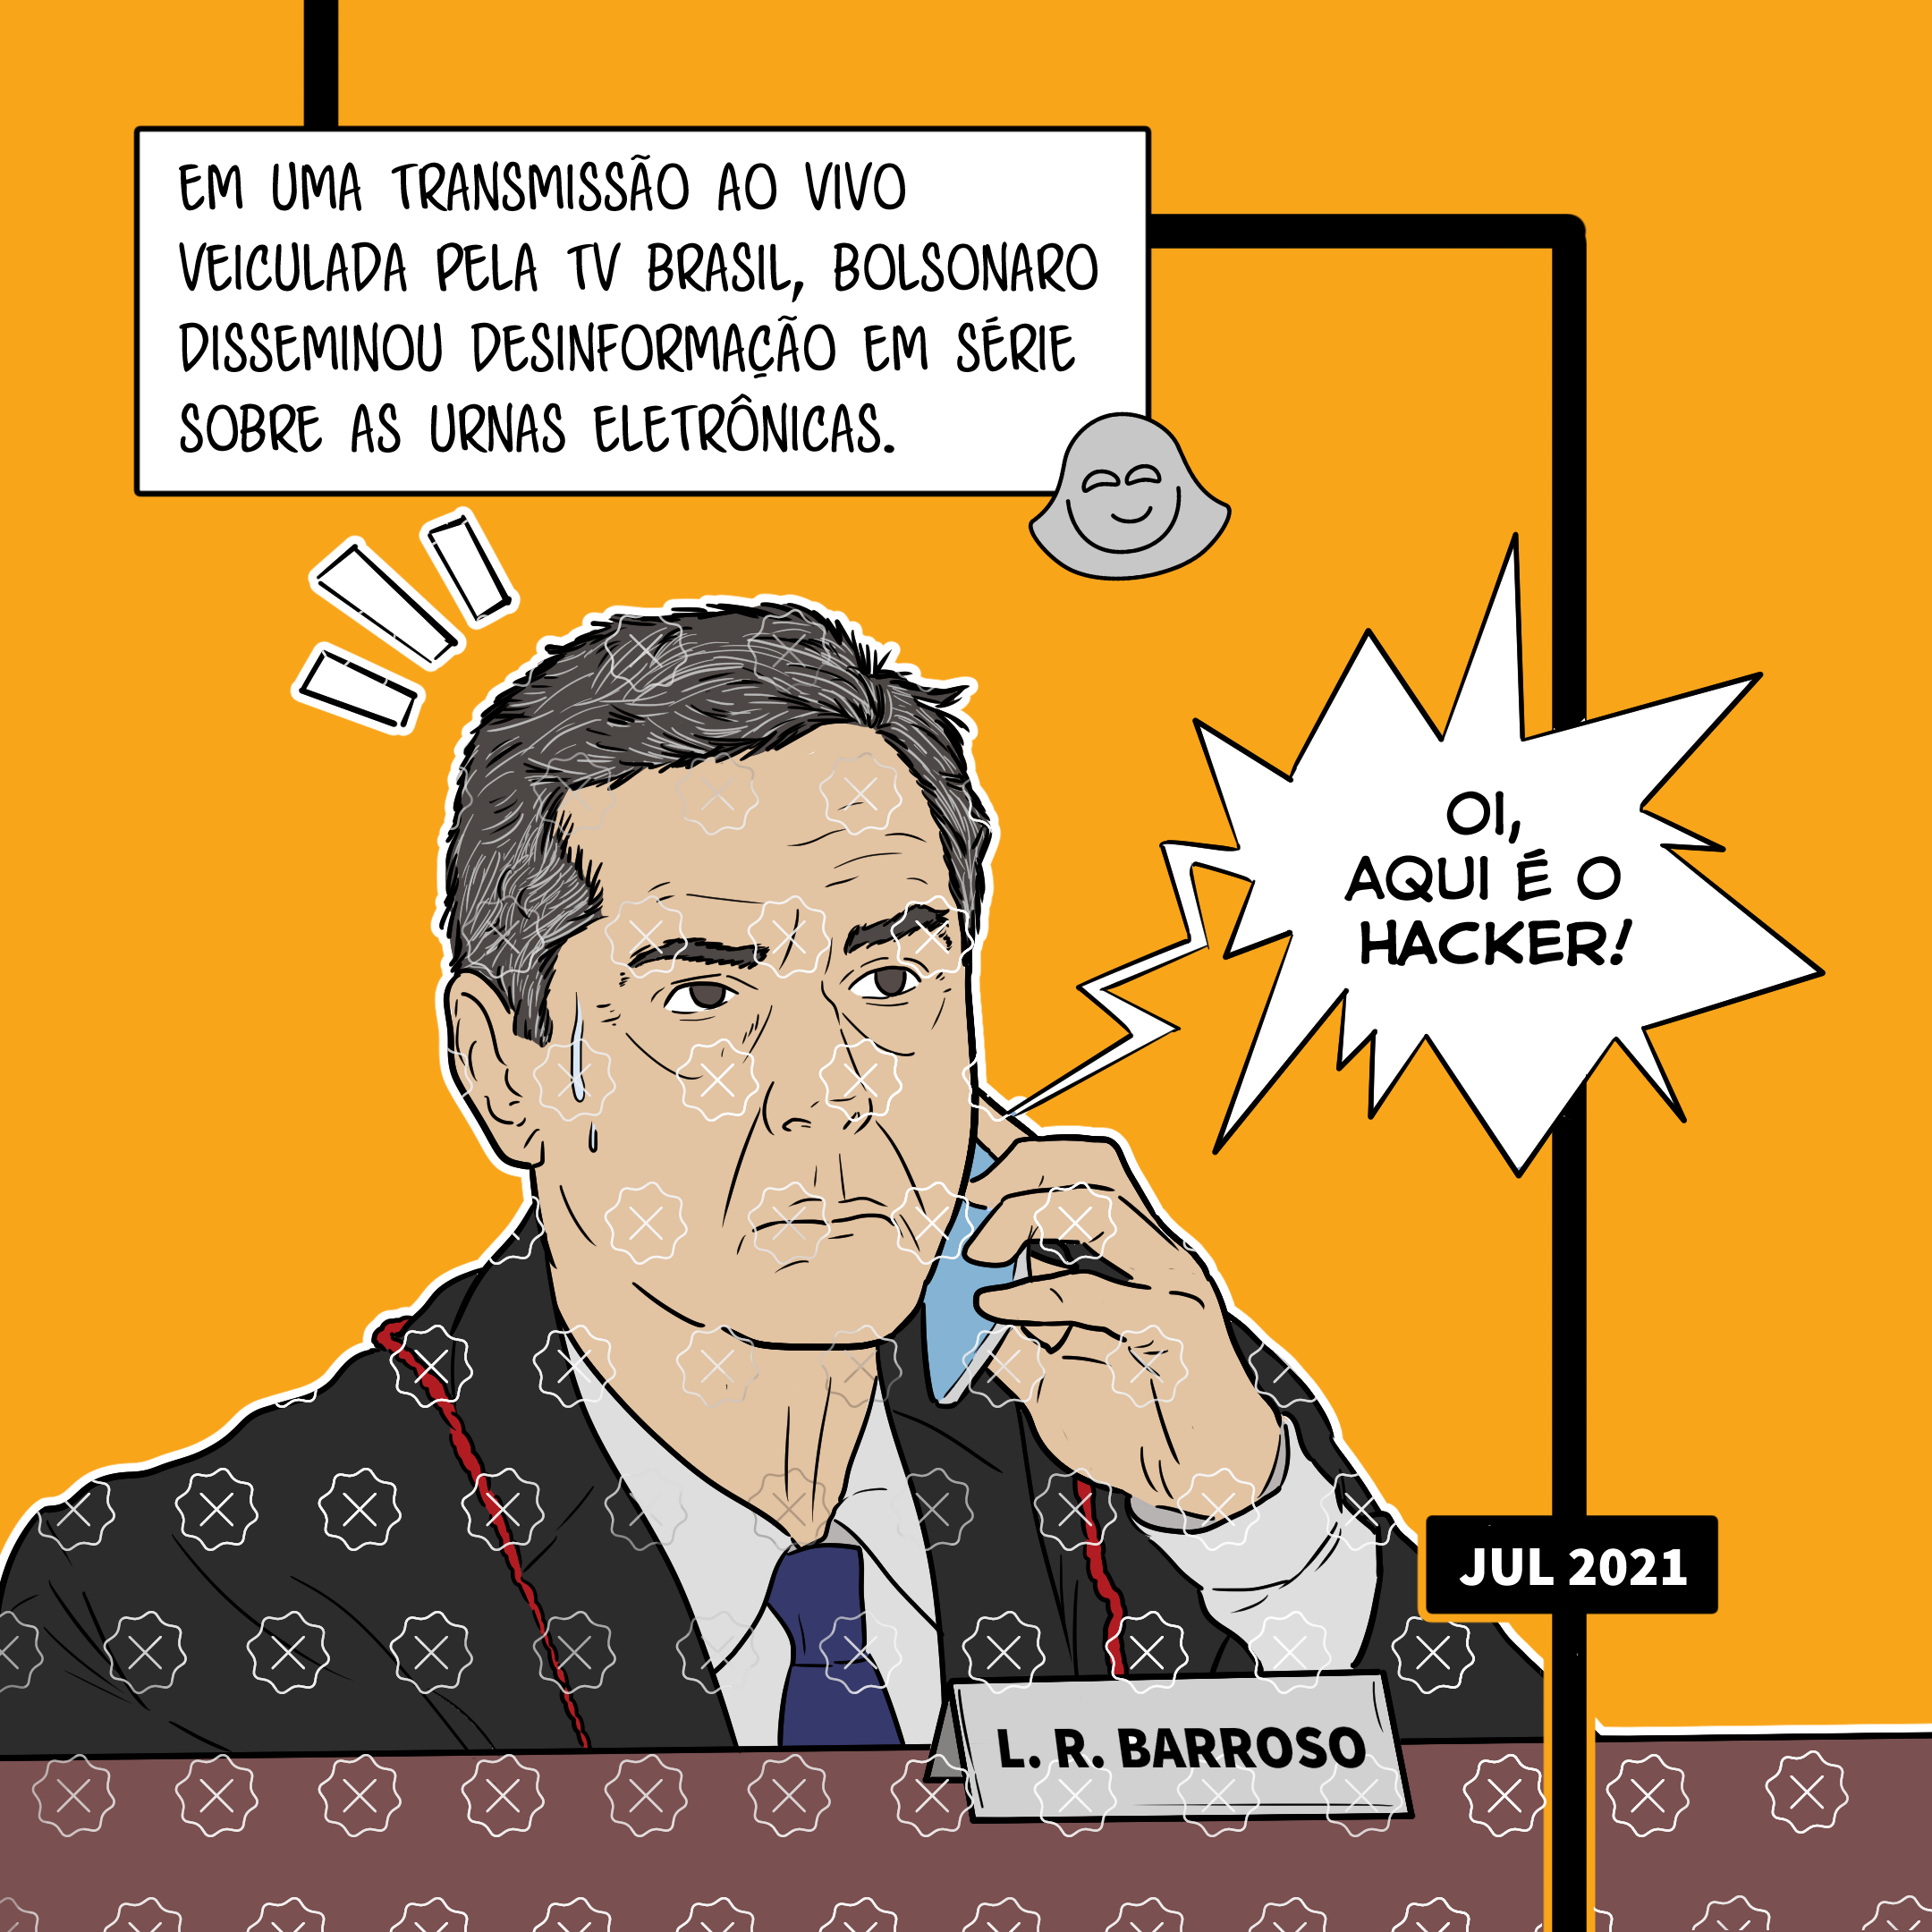 O ministro do STF Luís Roberto Barroso atende o celular com a expressão preocupada e escuta: Oi, aqui é o hacker.  Legenda: Em uma transmissão ao vivo veiculada pela TV Brasil, Bolsonaro disseminou desinformação em série sobre as urnas eletrônicas.